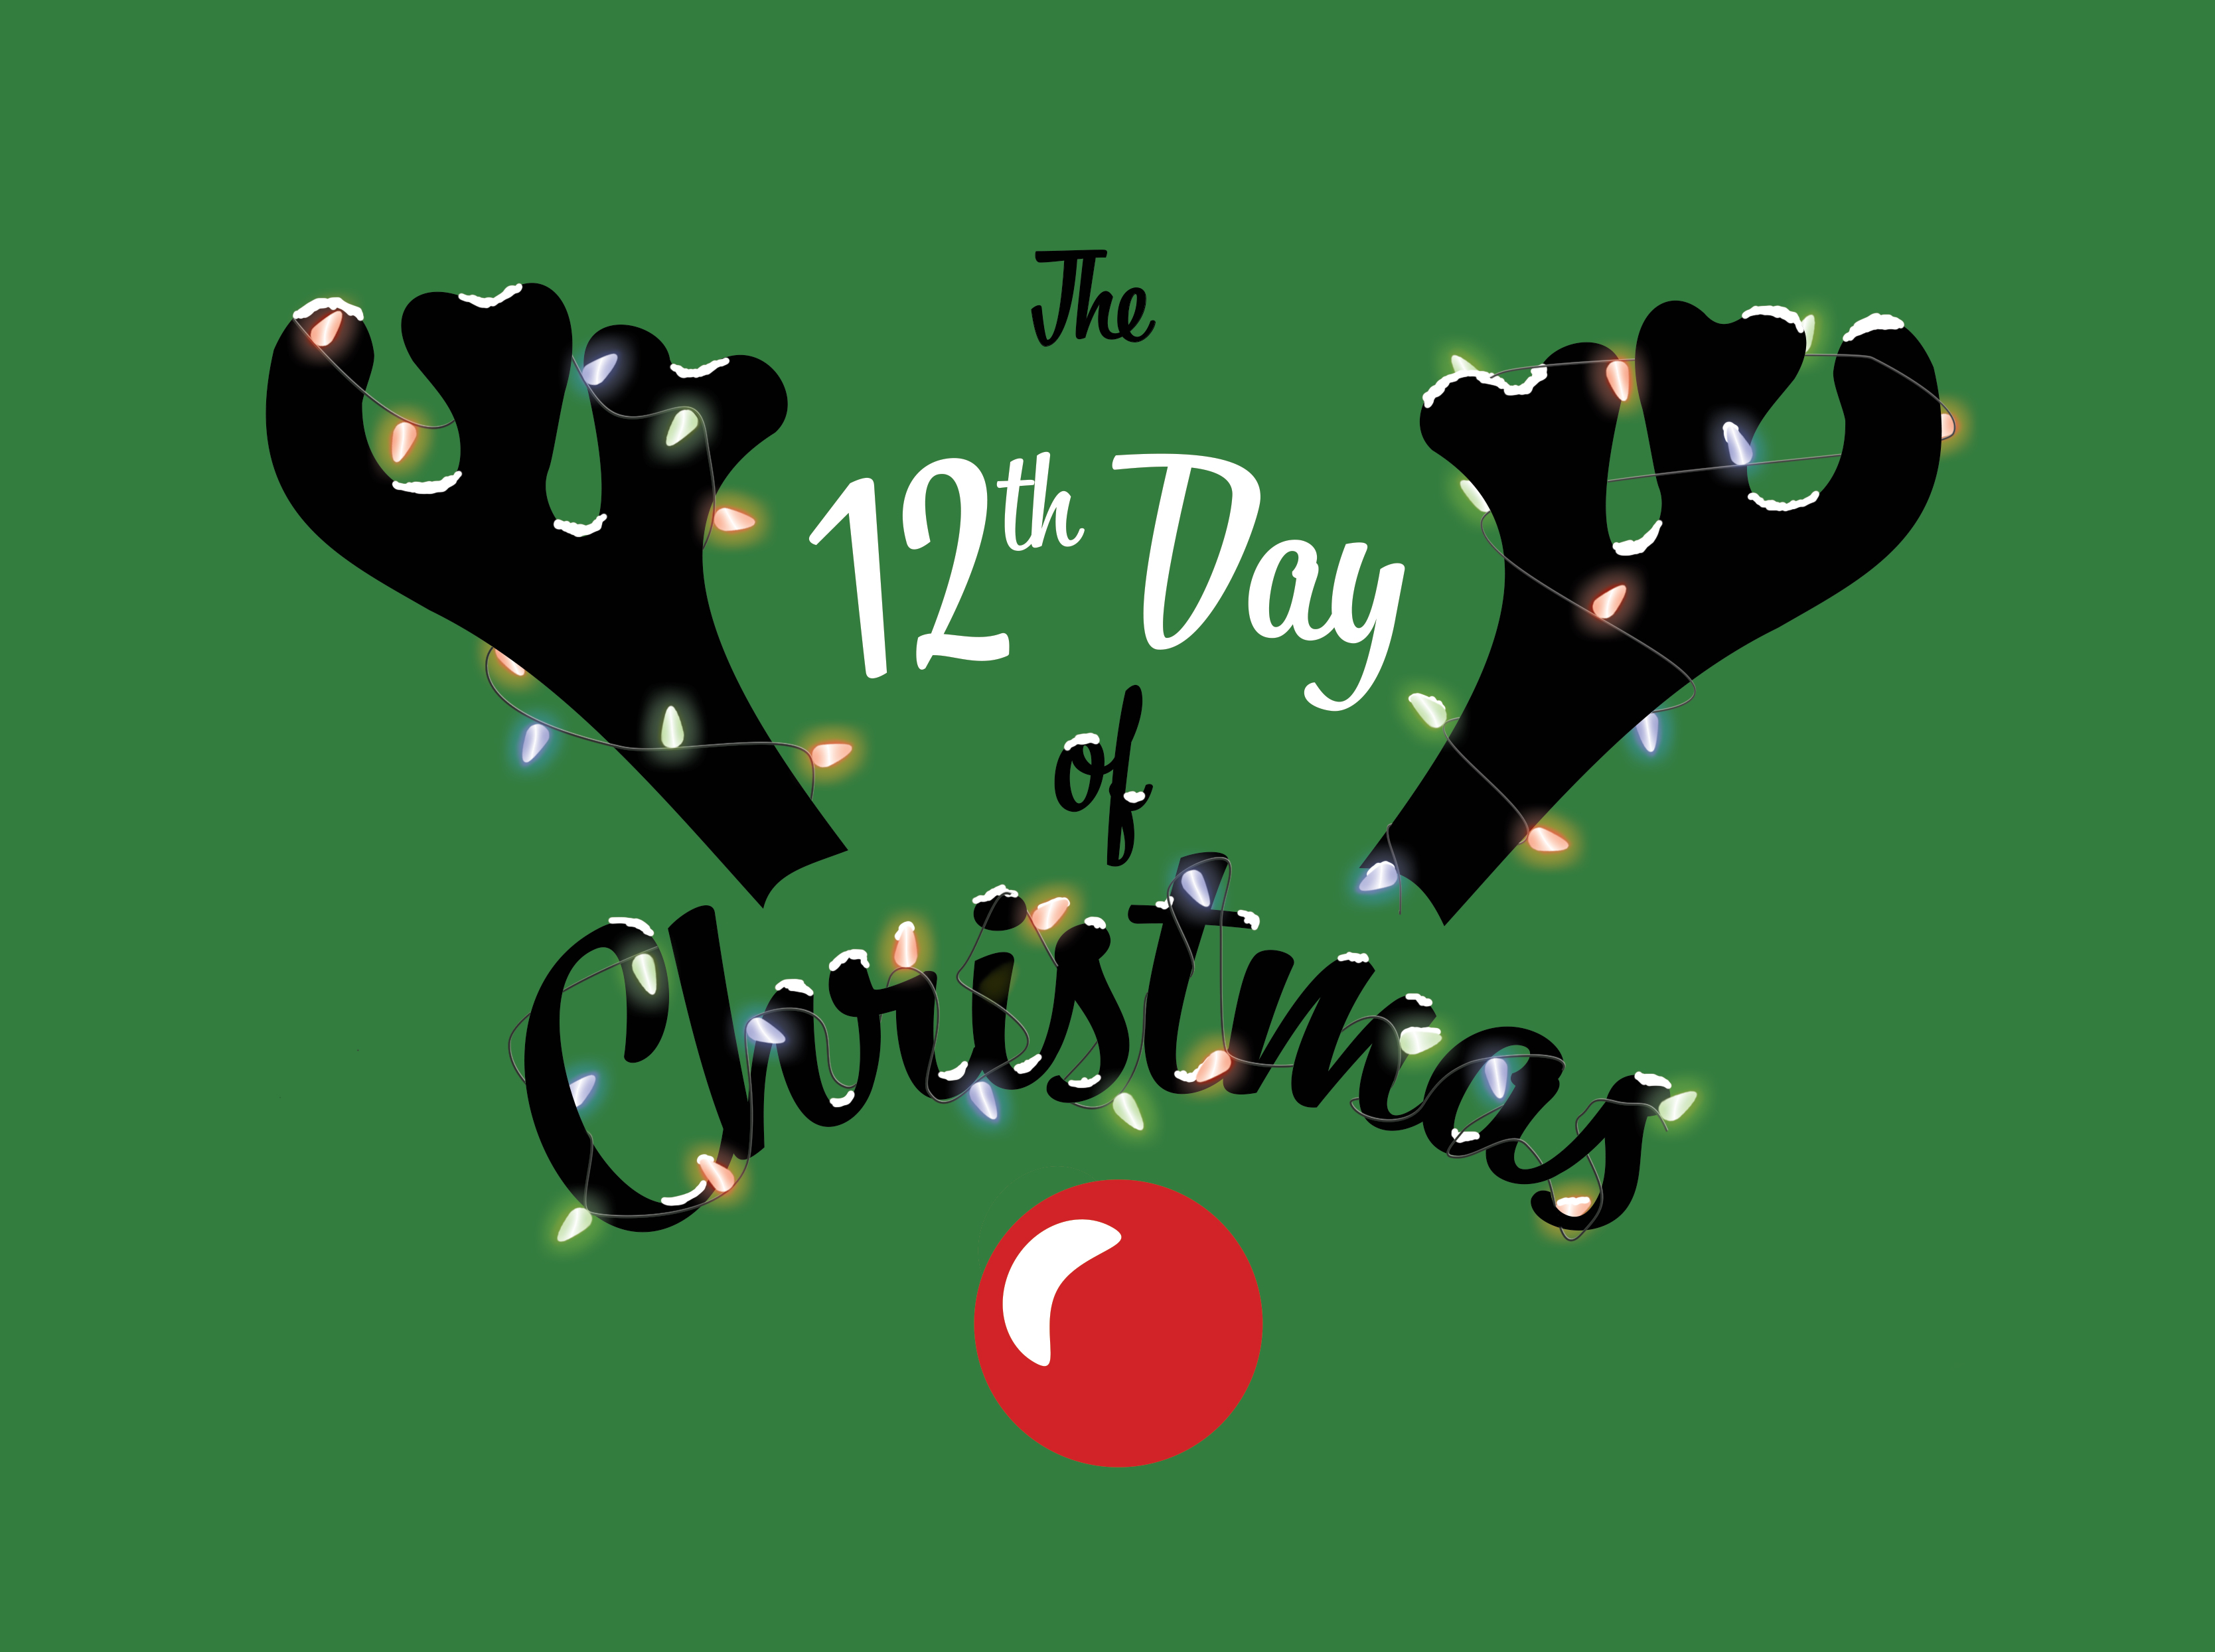 12 Days of Christmas: Christmas Eve GIF list - The Utah Statesman